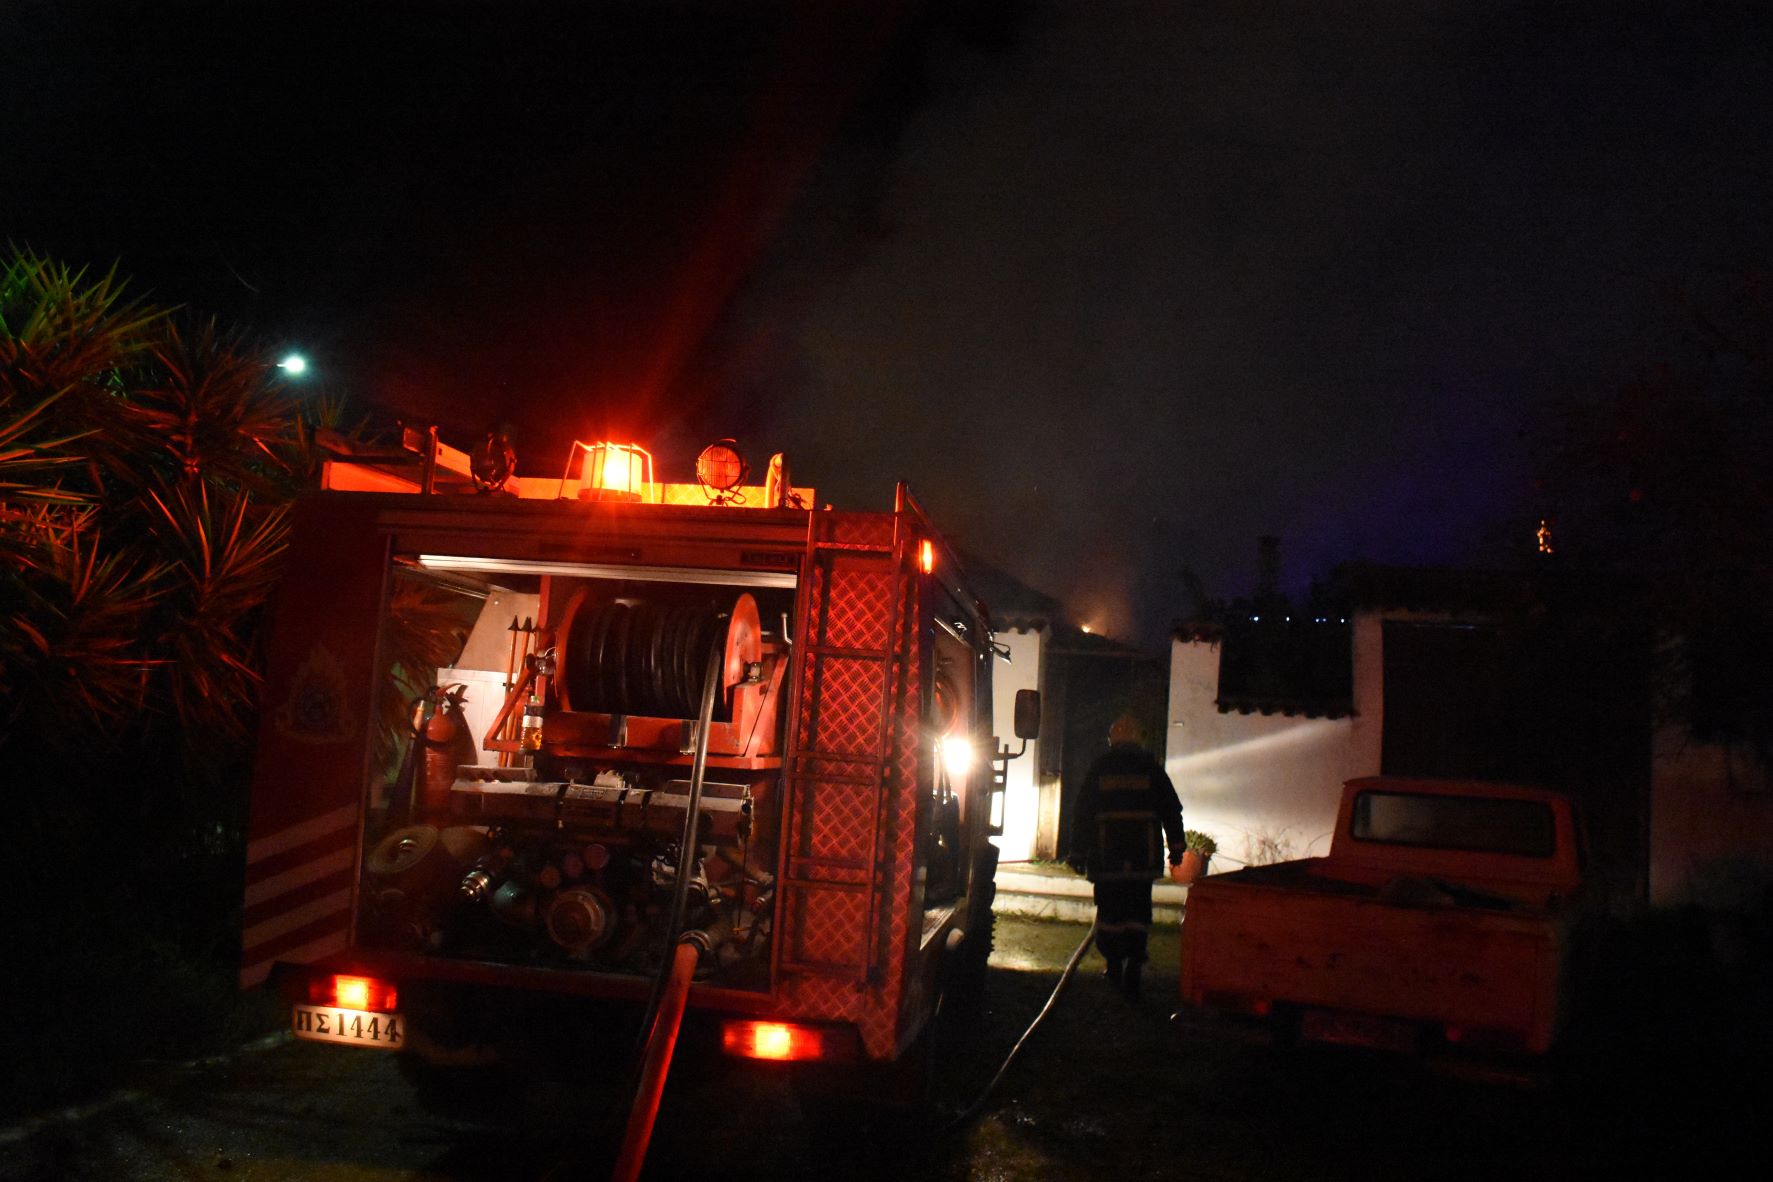 Ιωάννινα: Φωτιά ξέσπασε στην Λέσχη Αξιωματικών